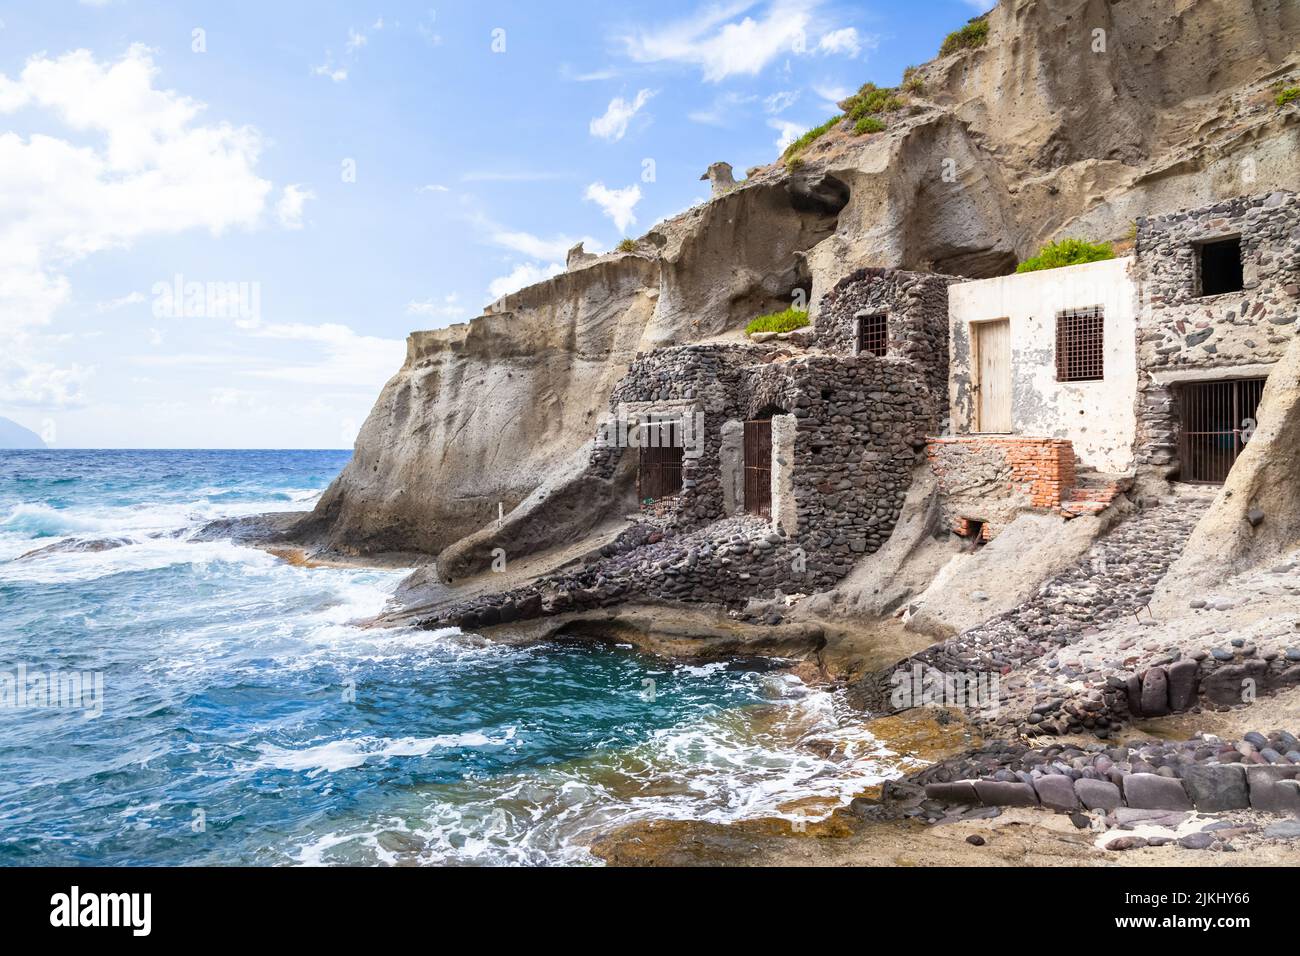 Une image des lieux perdus de l'île de Lipari, au sud de l'Italie Banque D'Images